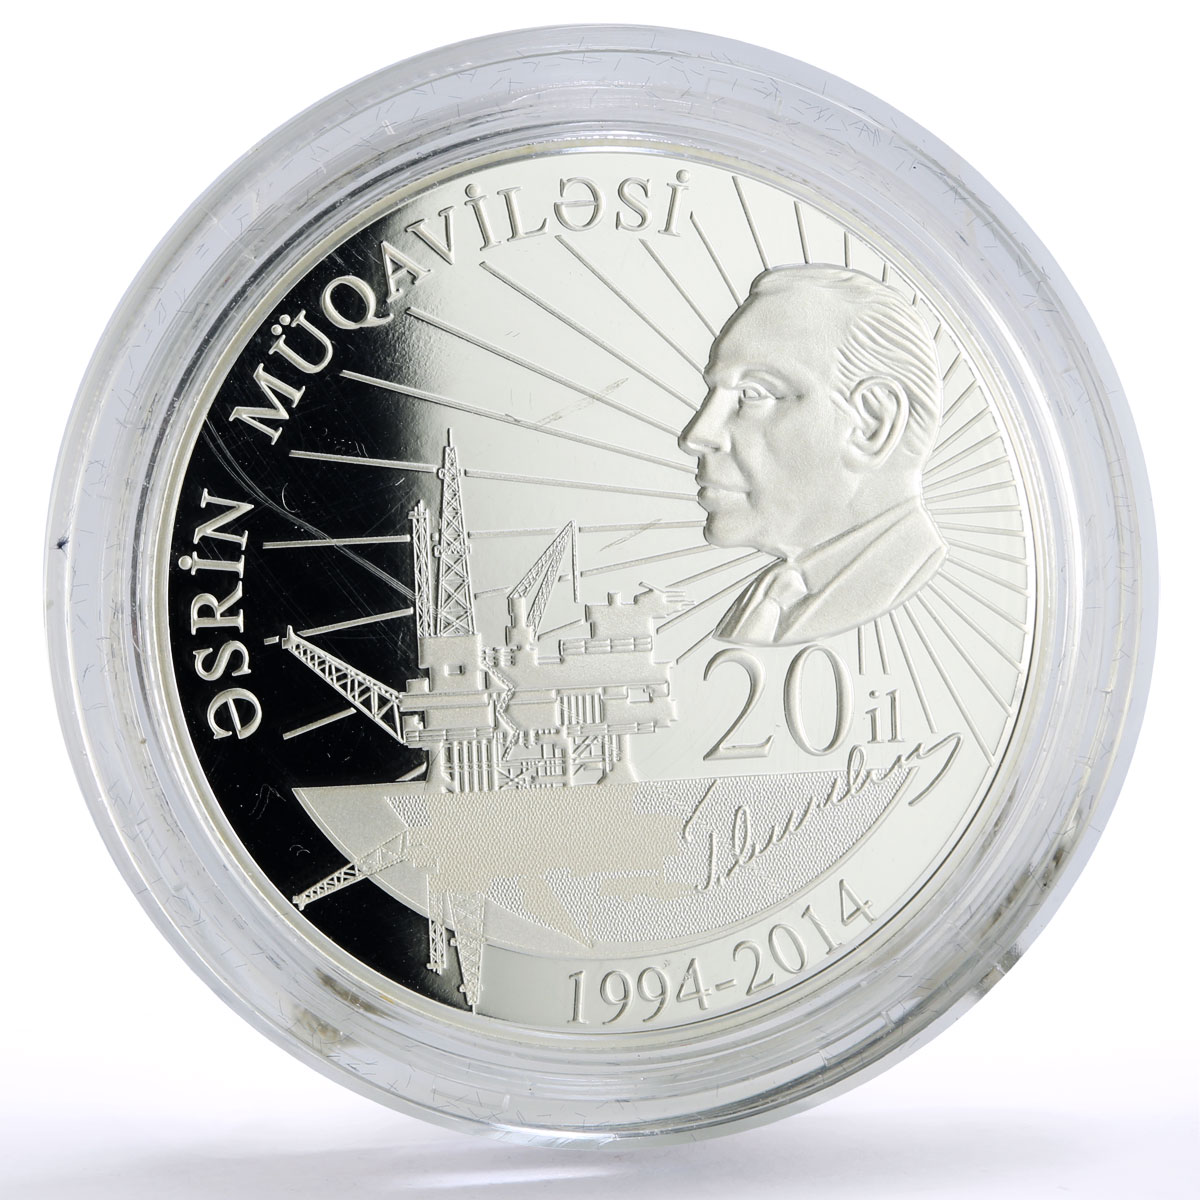 Azerbaijan 5 manat Heydar Aliev Century Contract Politics proof silver coin 2014